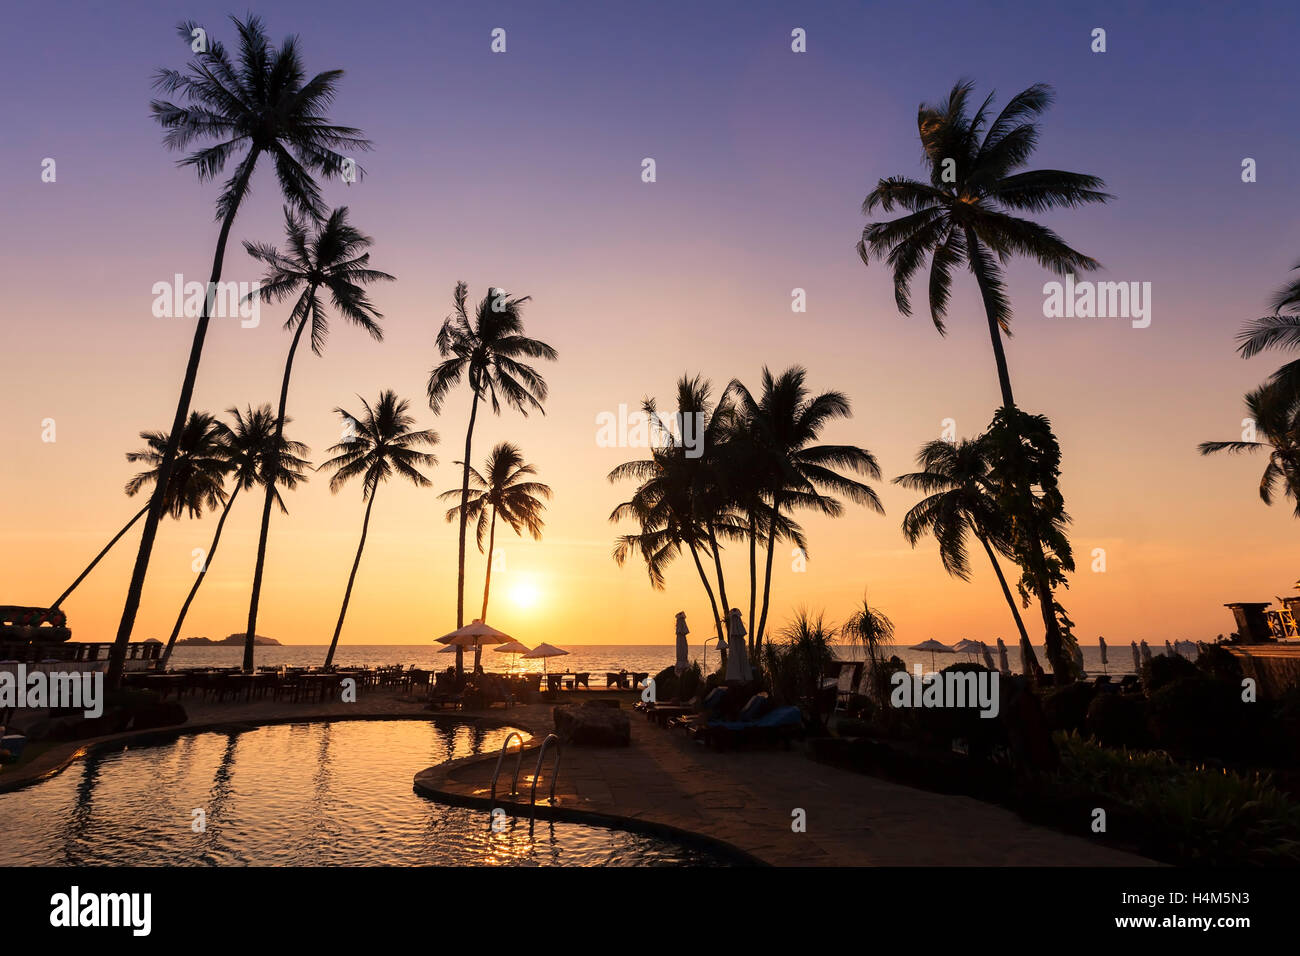 Entspannung in einem schönen Strand Hotel und Resort in der Nähe von Tropical Meer bei Sonnenuntergang Stockfoto